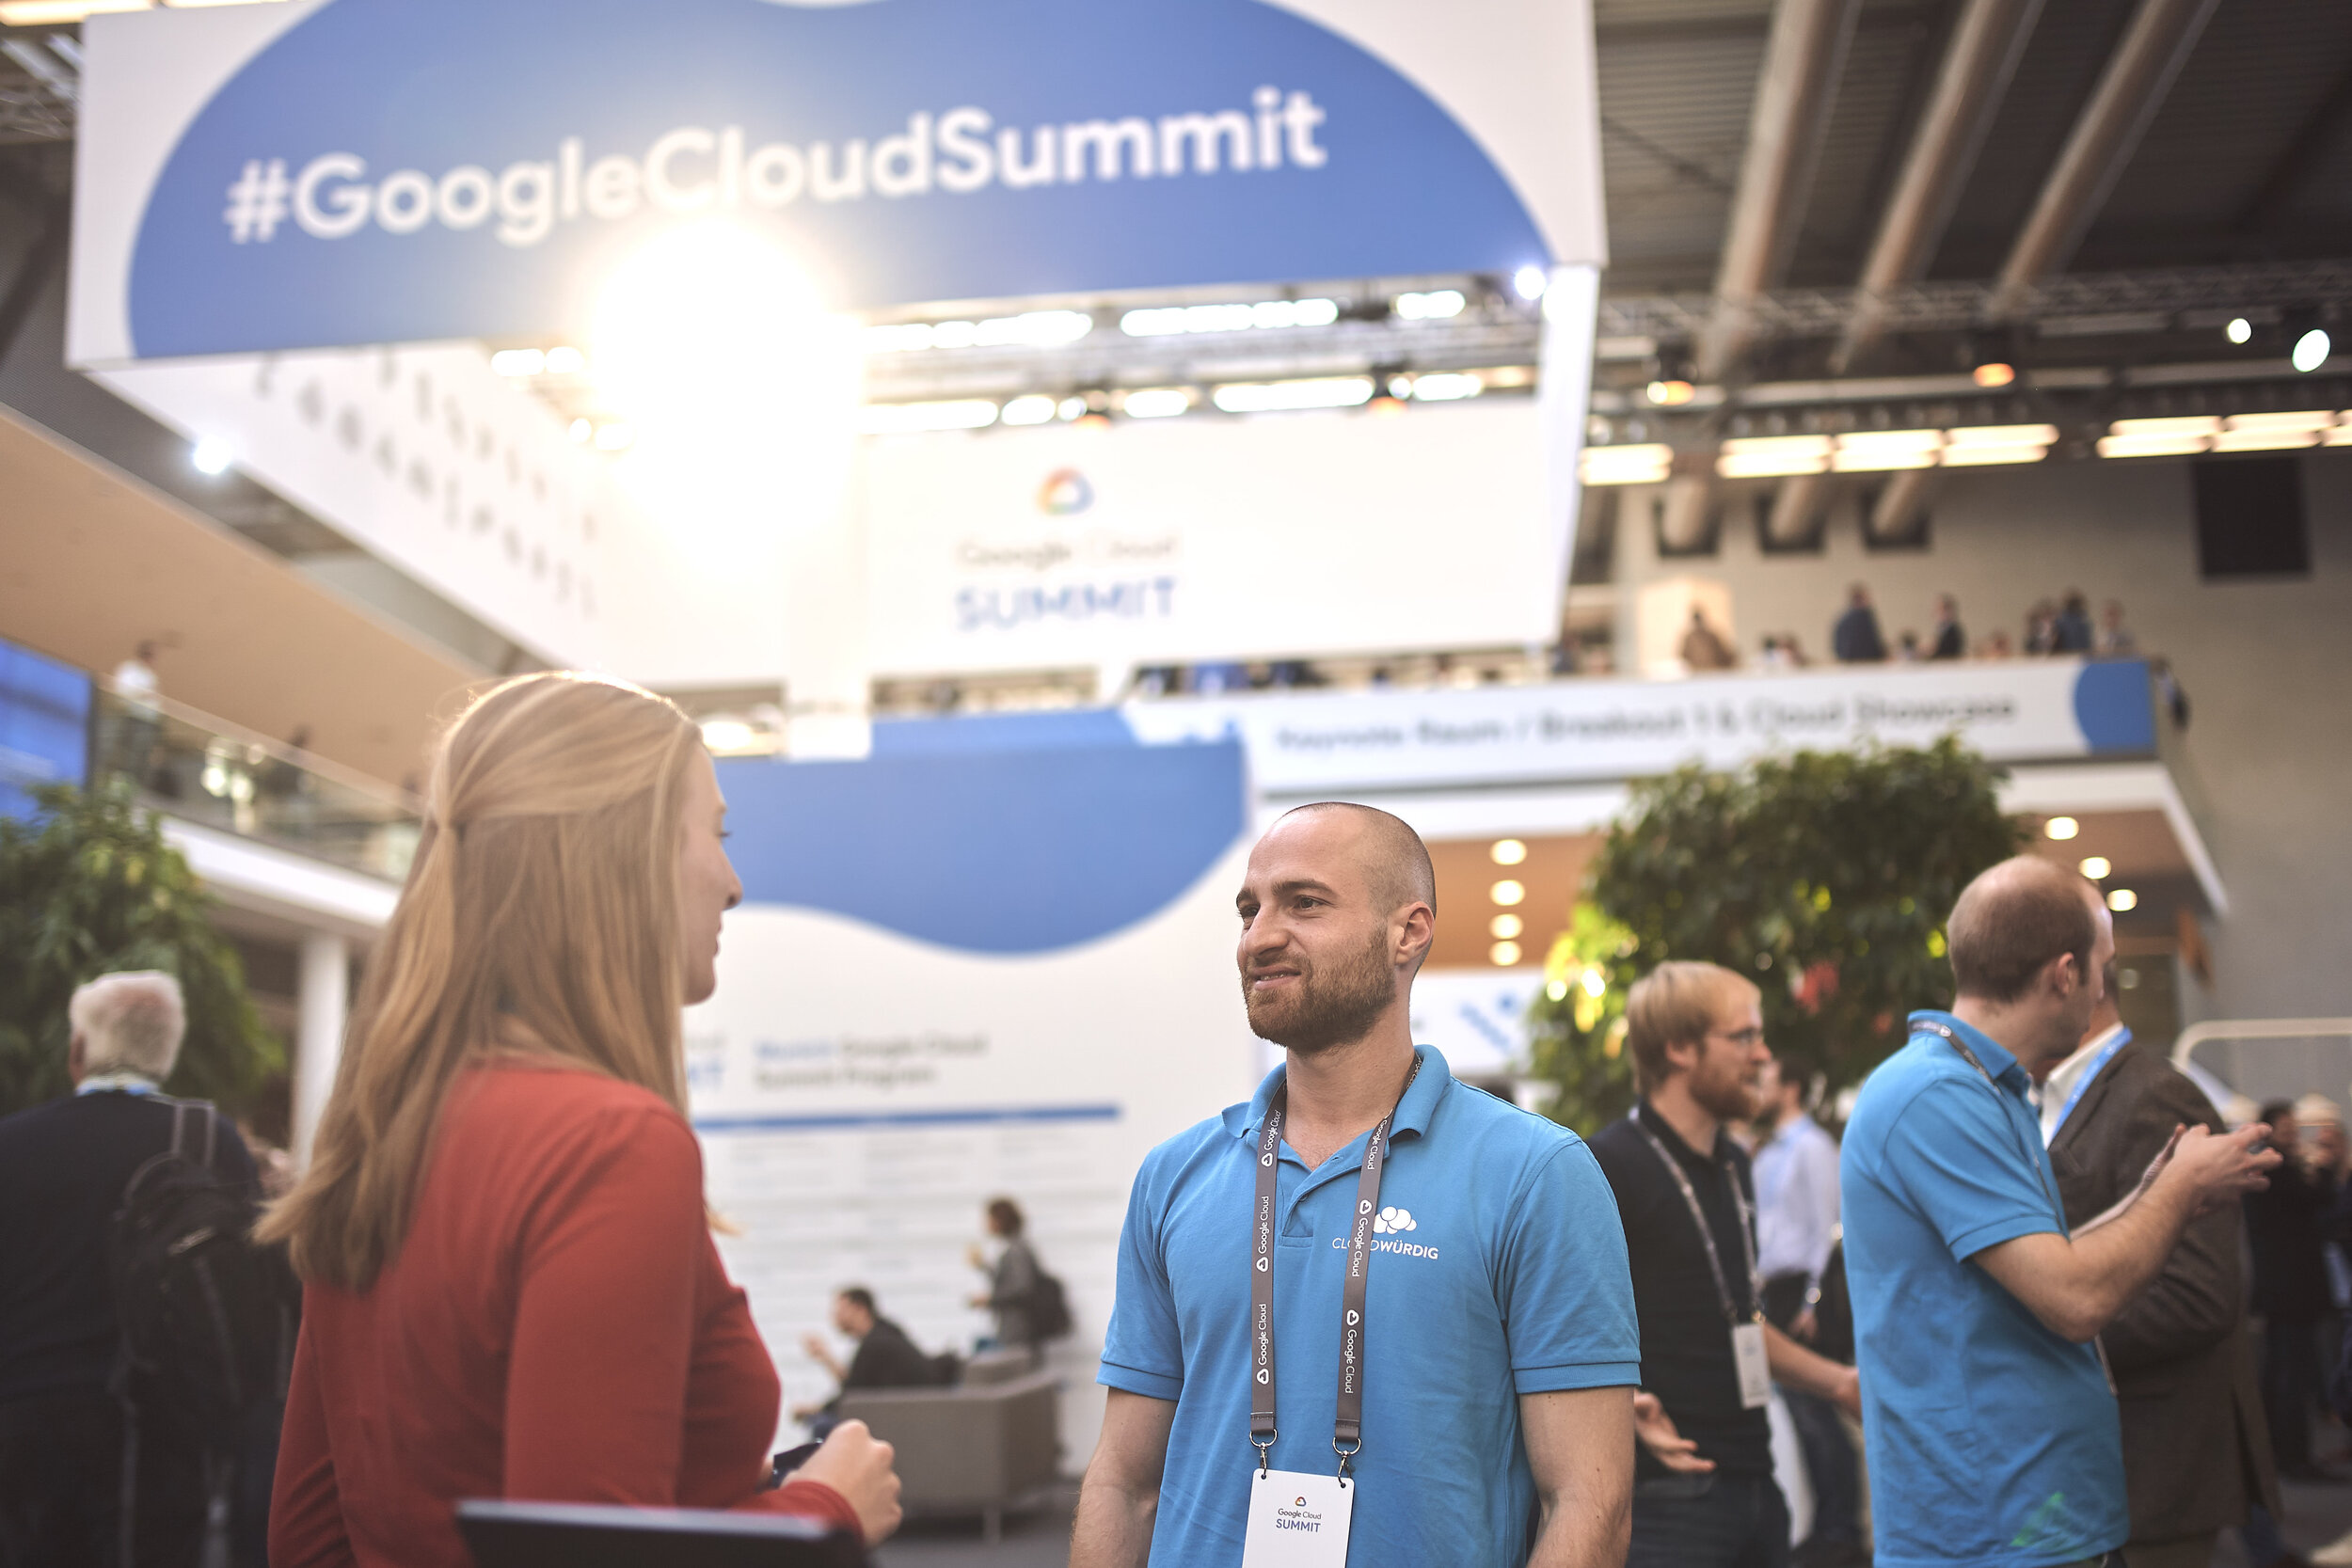 Fabian_Vogl_2018-11-20_Google_Cloud_Summit_0109.jpg